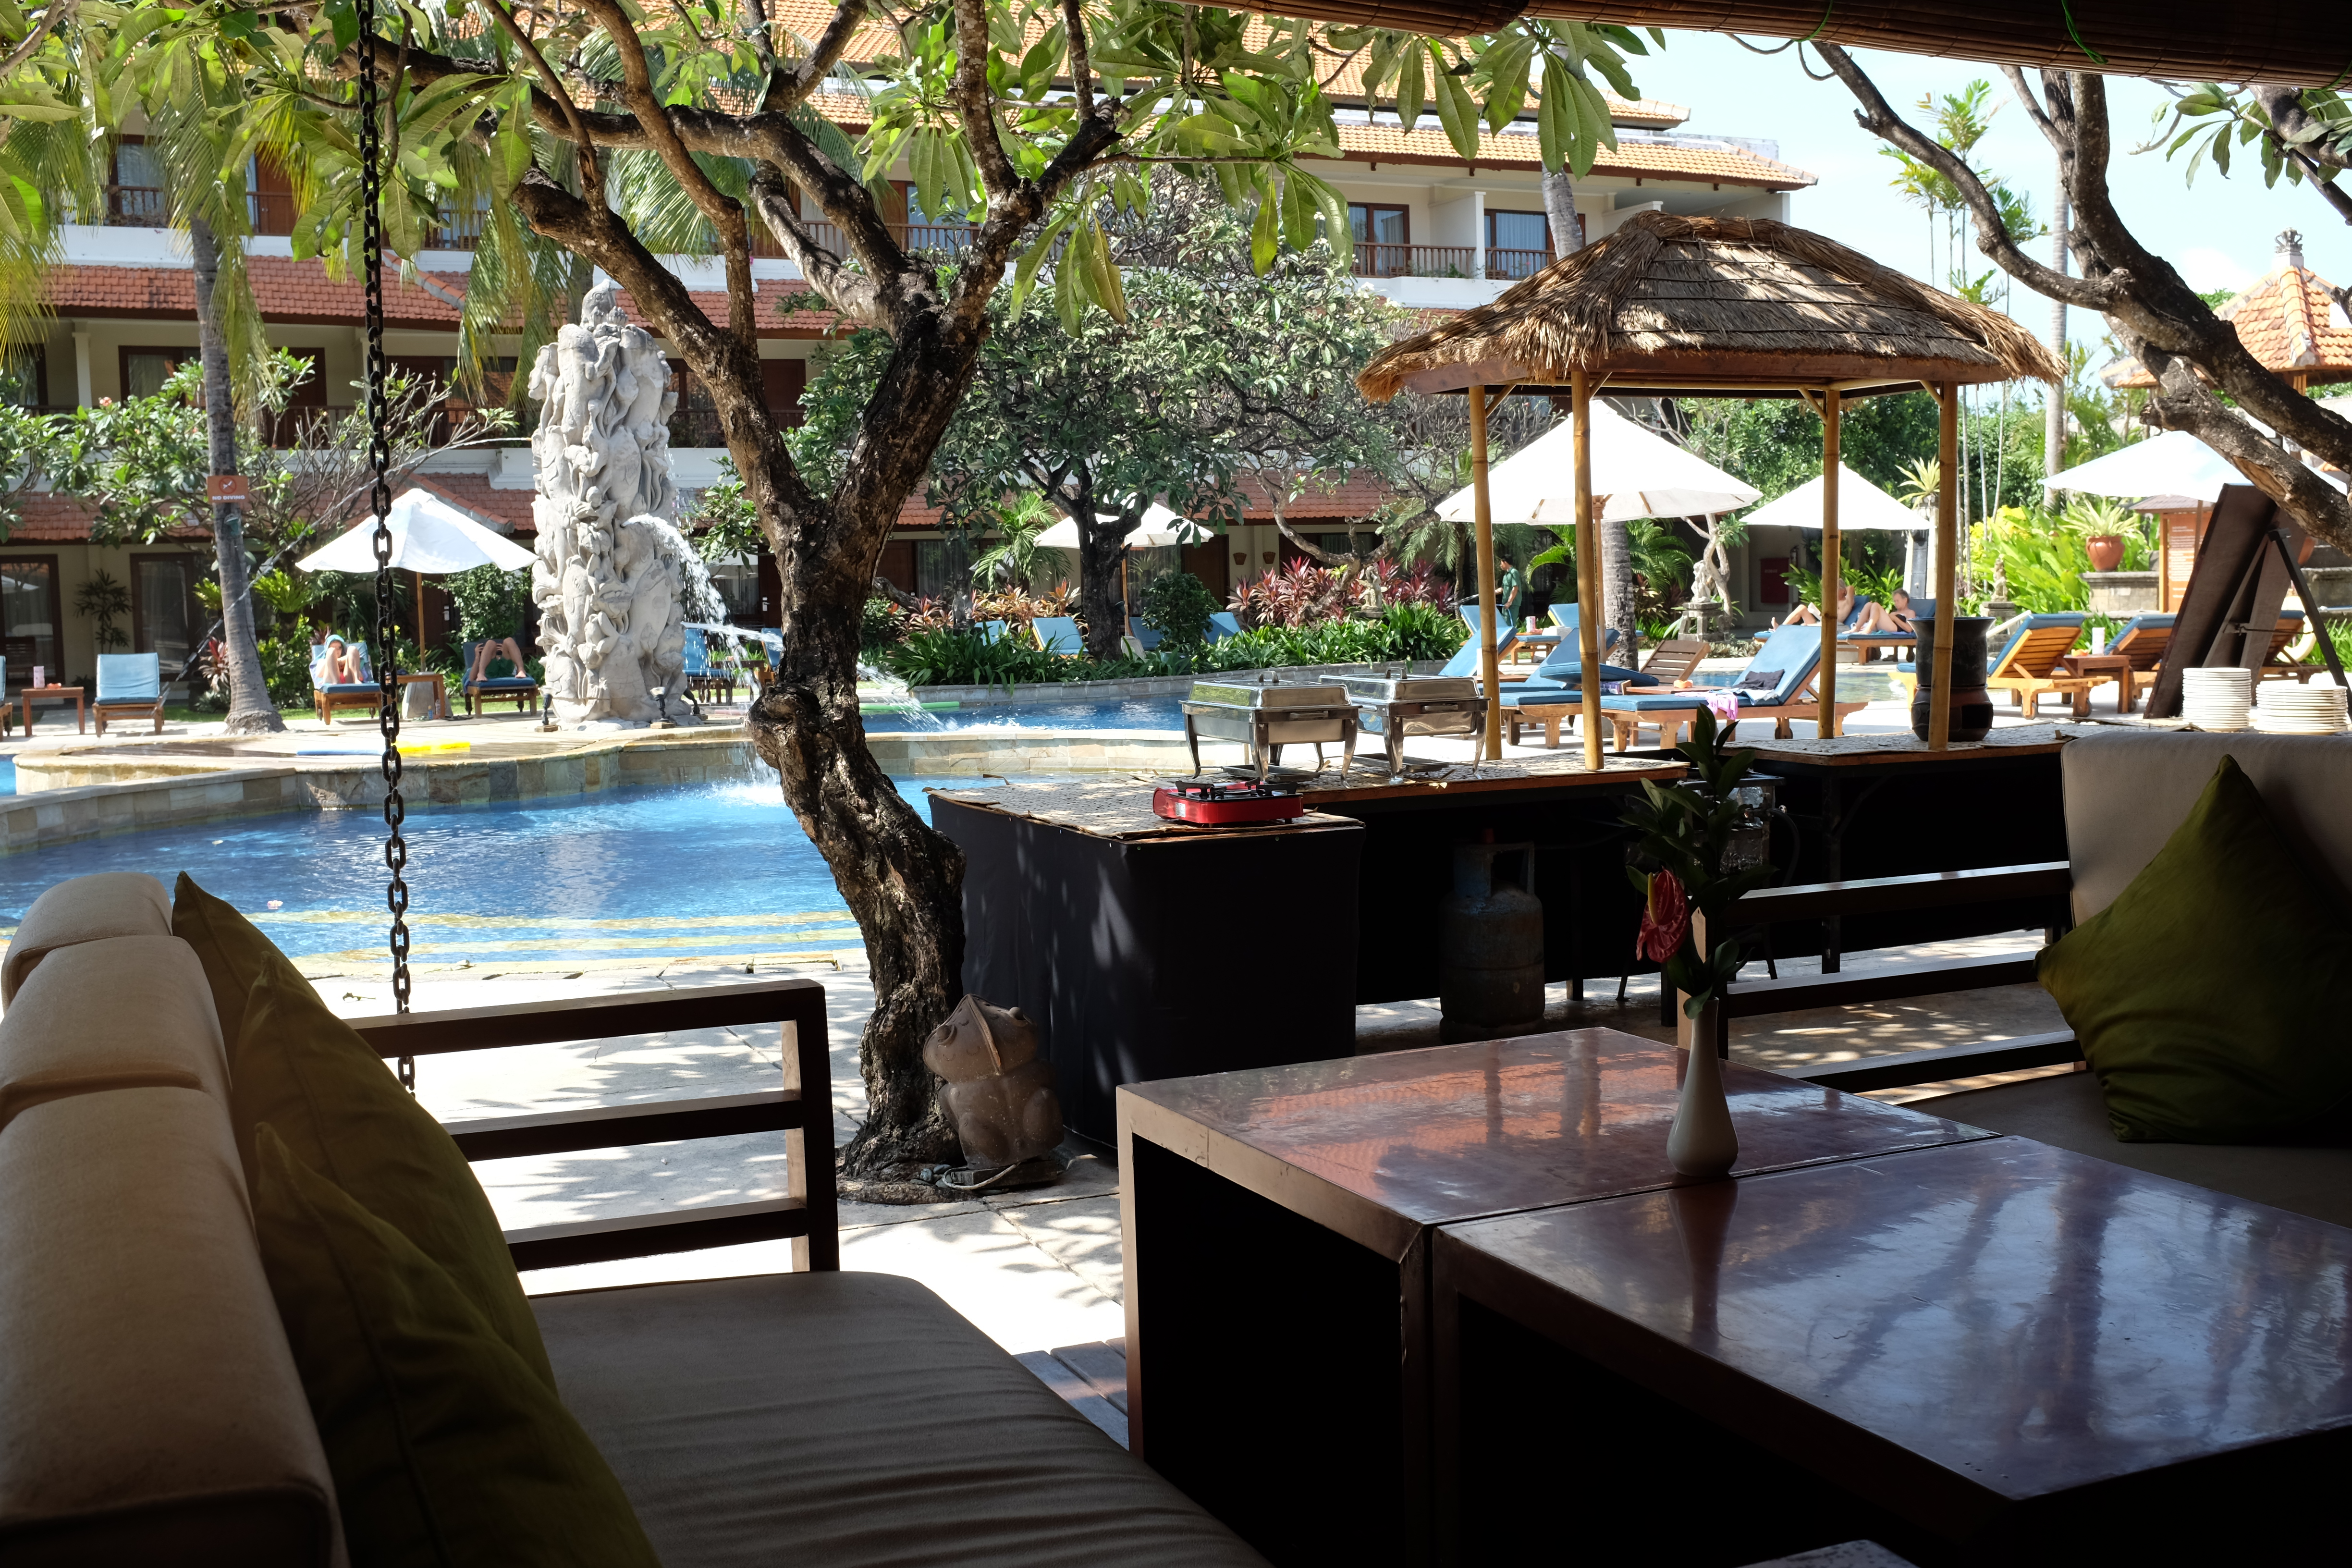 Where I Stayed – Bali Rani Kuta